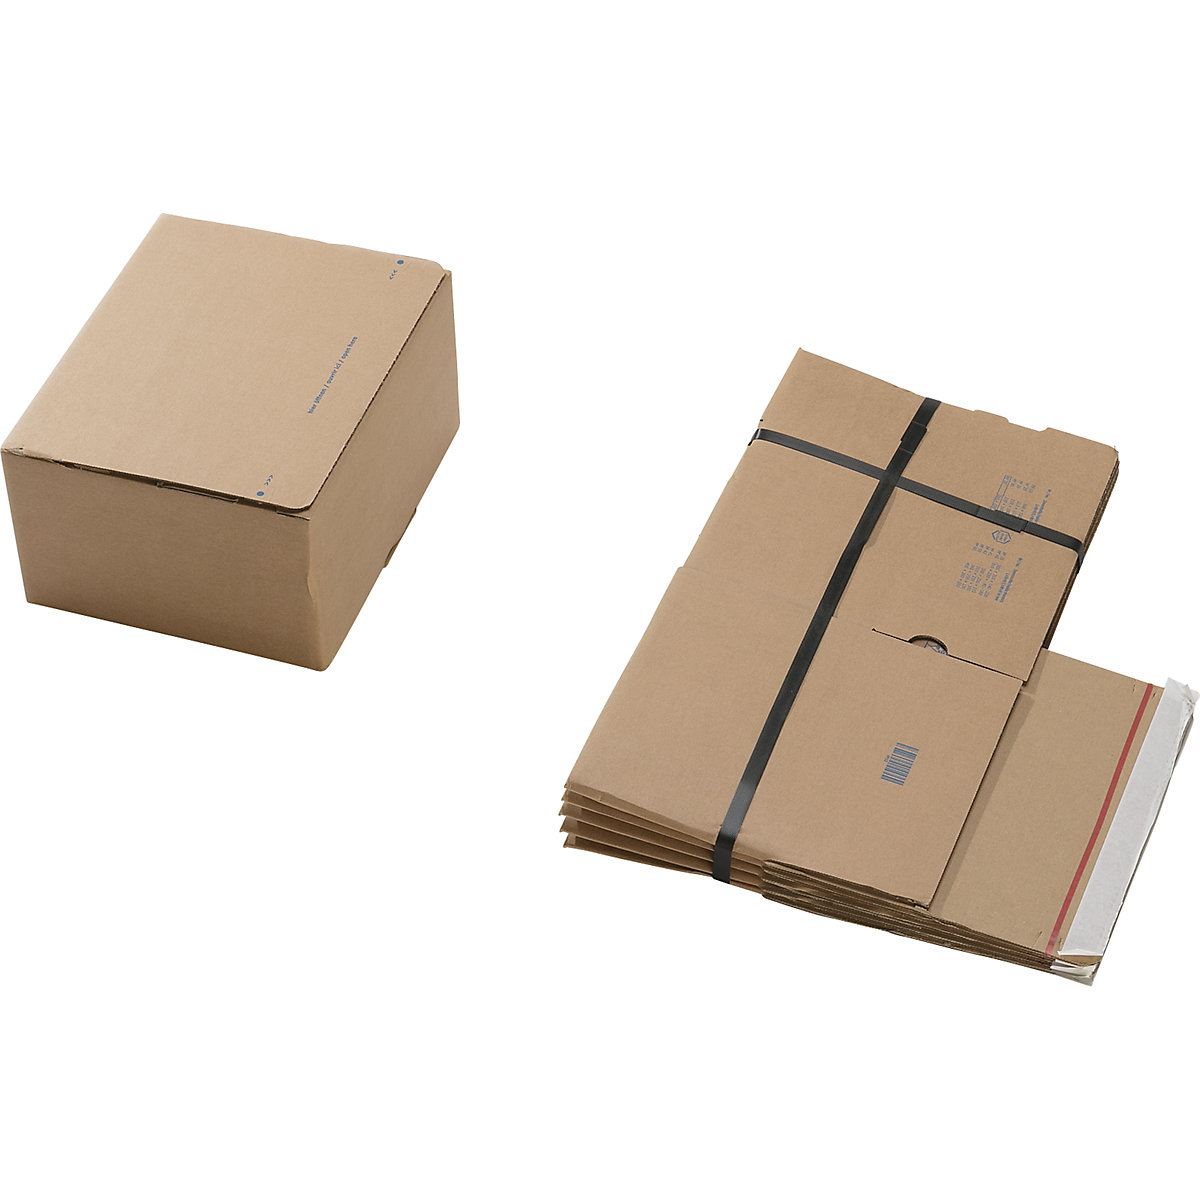 Caixa de cartão de envio, com fundo automático e fecho autocolante, dimensões interiores CxLxA 260 x 220 x 130 mm, embalagem de 100 unidades-3